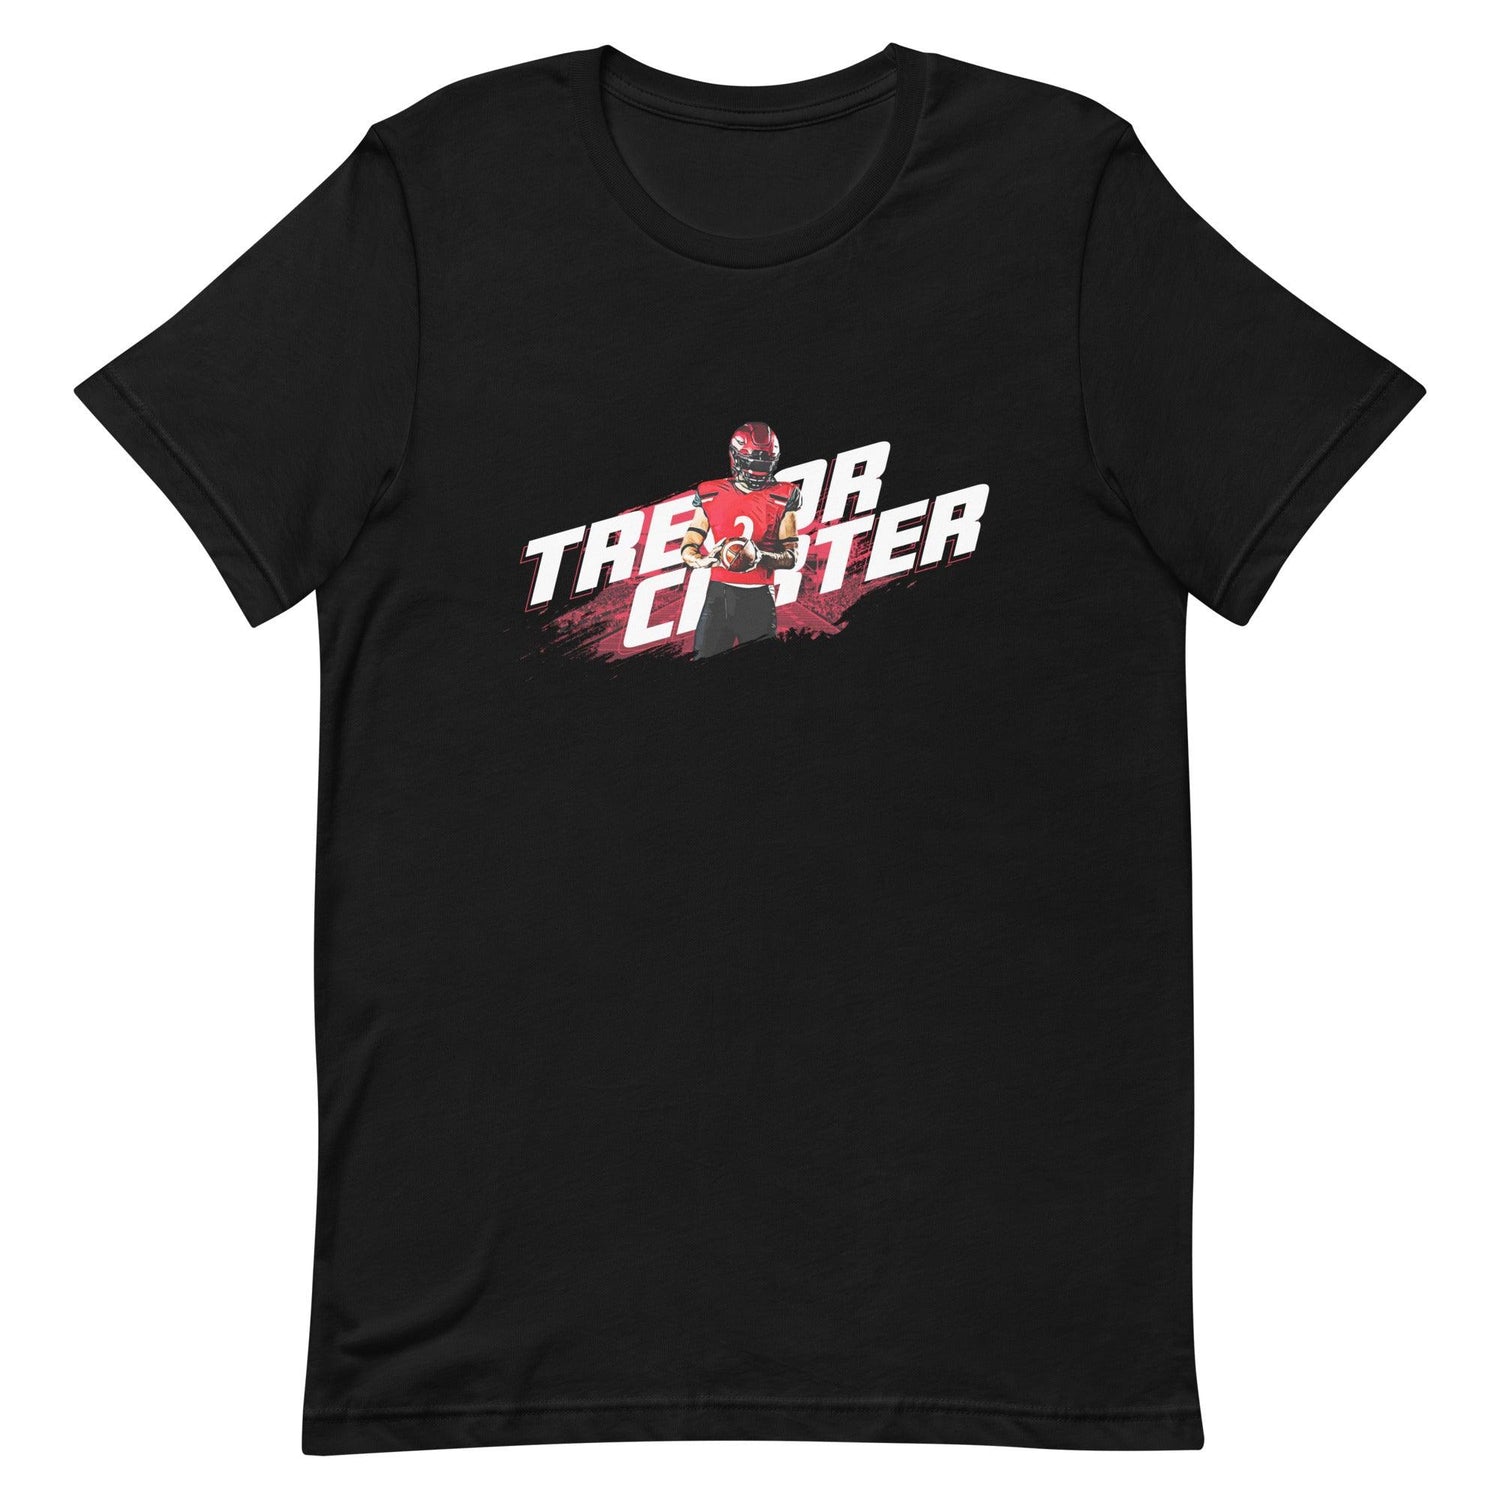 Trevor Carter "Gameday" t-shirt - Fan Arch